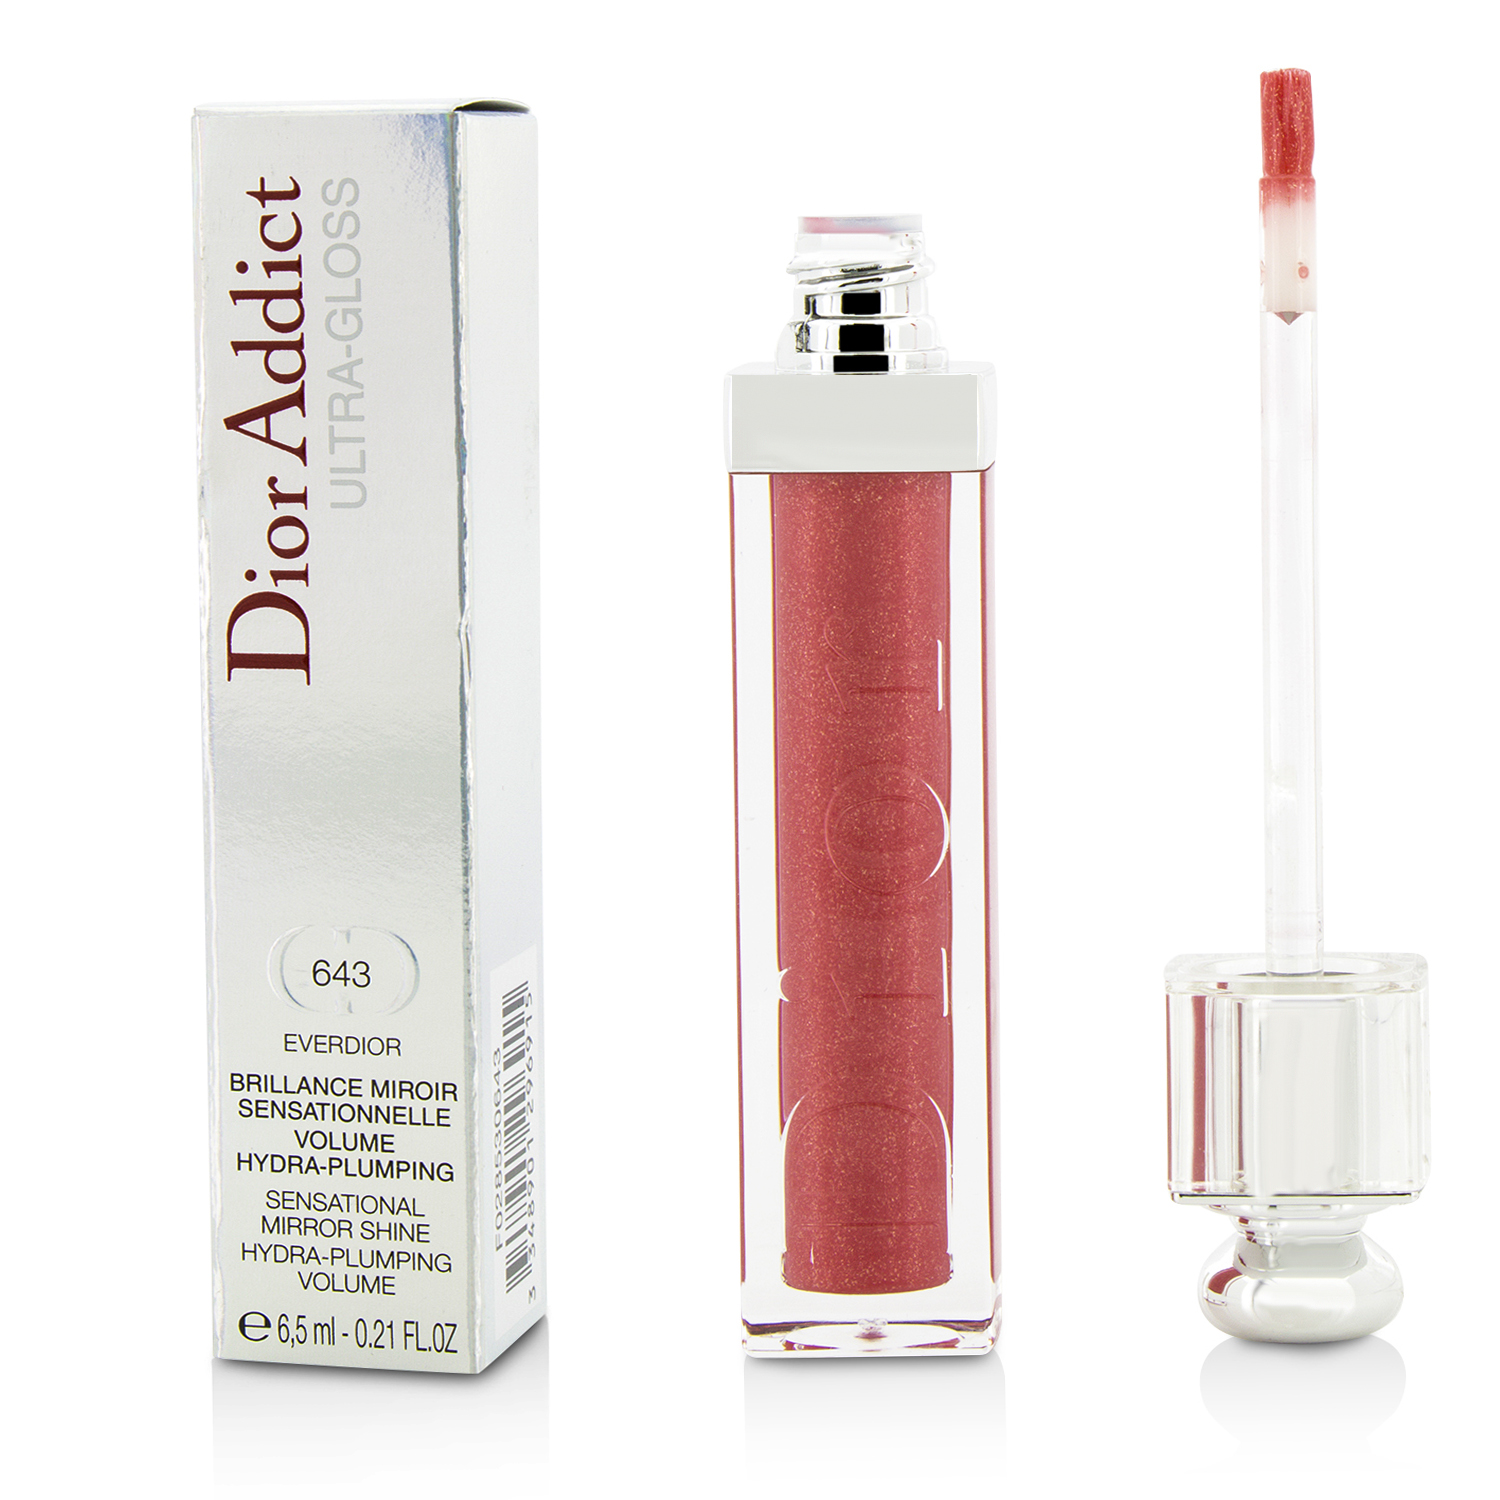 Dior Addict Ultra Gloss (Sensational Mirror Shine) - No. 643 Everdior Christian Dior Image